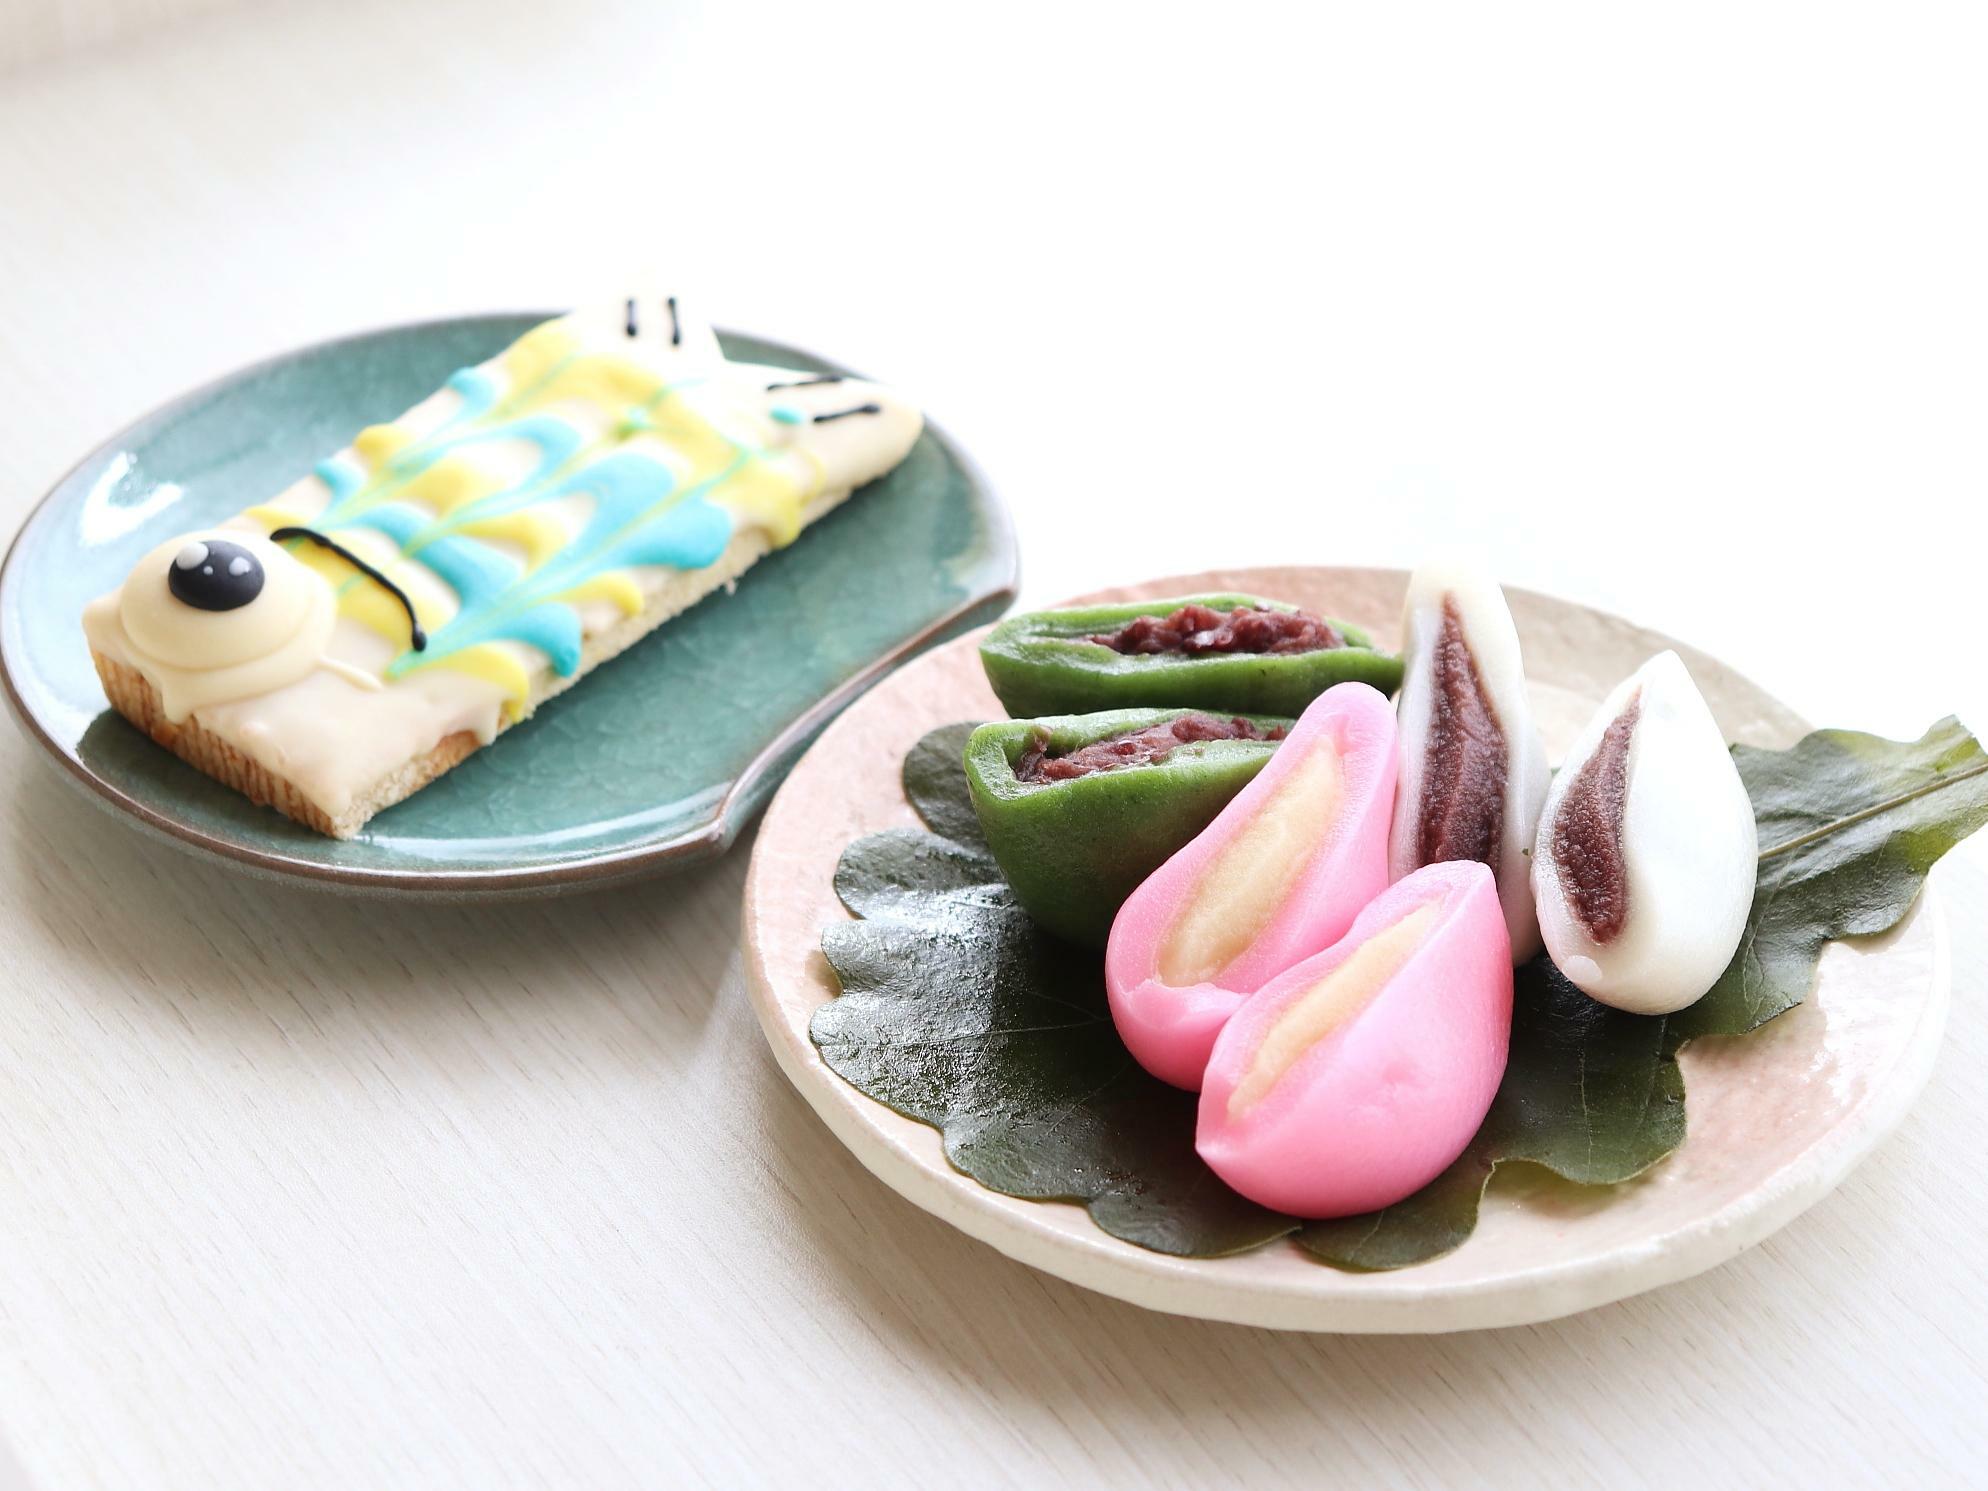 写真左『菊野屋製菓舗』のバウムクーヘンをデコレーションした「鯉のぼりクーヘン（380円）」。「かしわ餅」と併せて楽しみたい